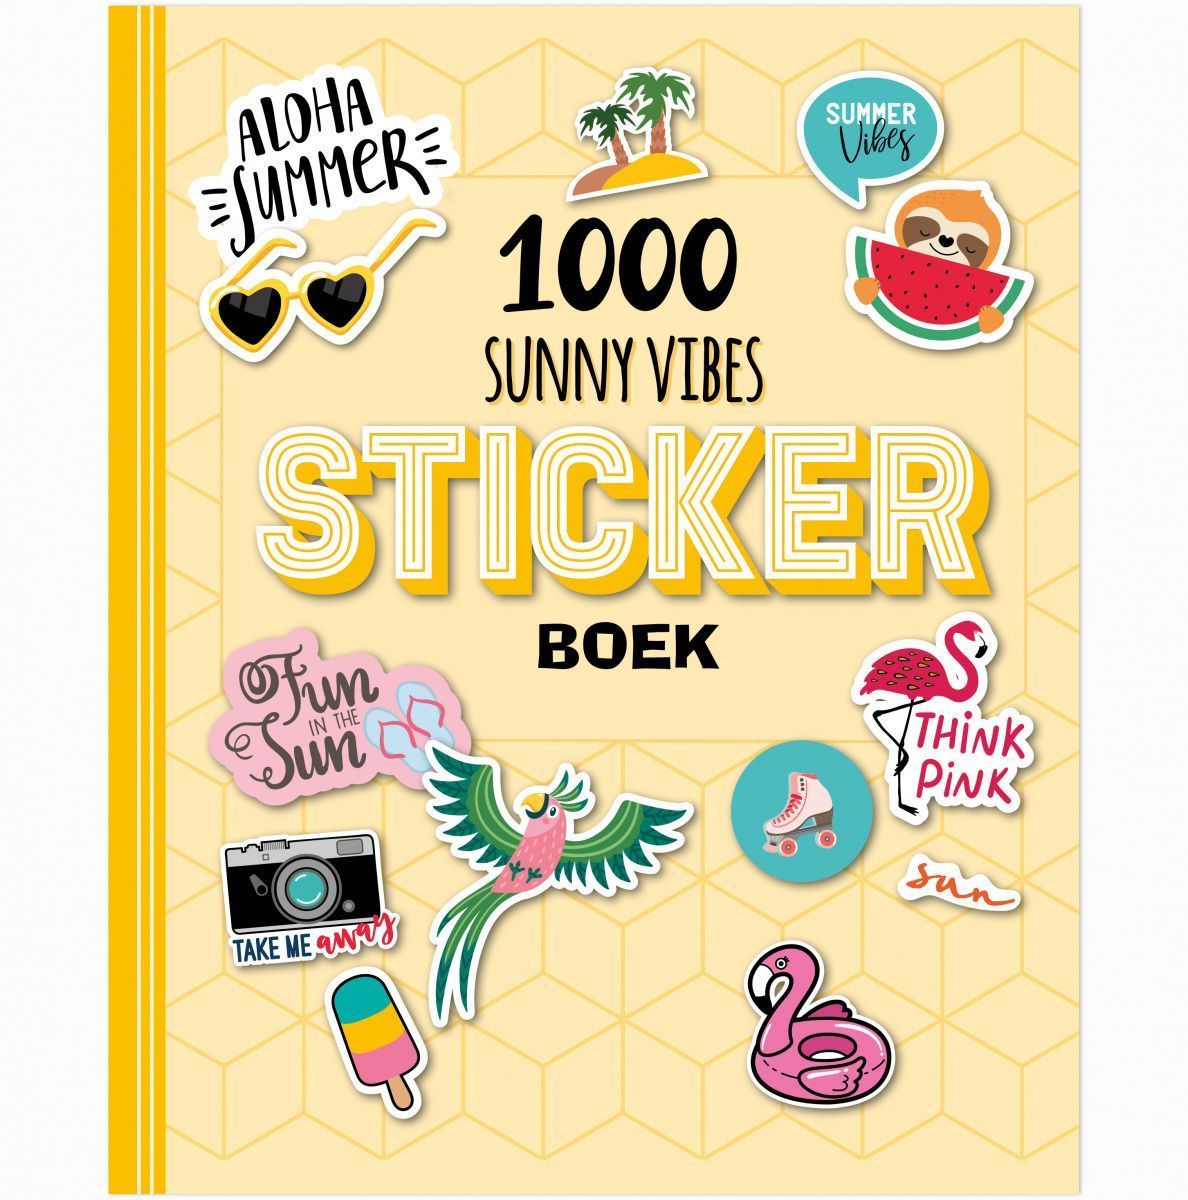 Email schrijven Purper belediging Stickerboek - 1000 Sunny Vibes Kopen? ⋆ Invulboekjes.nl